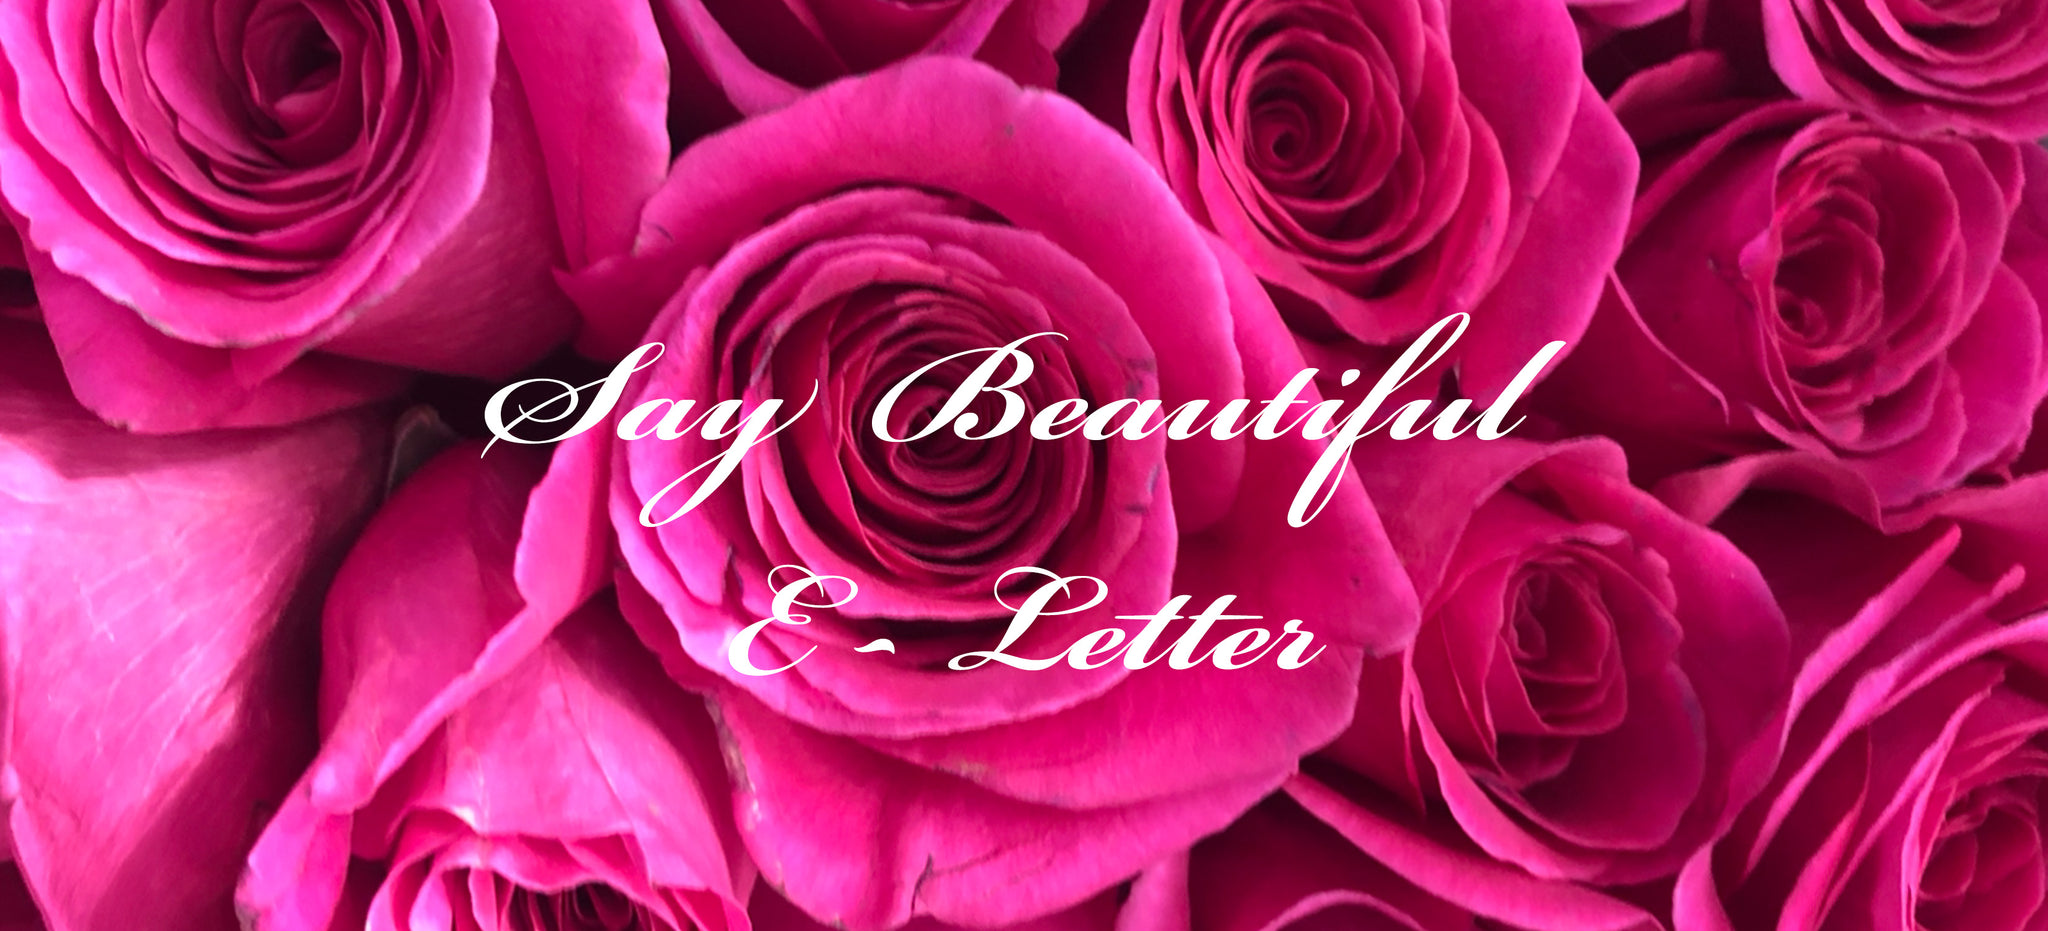 Say beautiful e letter